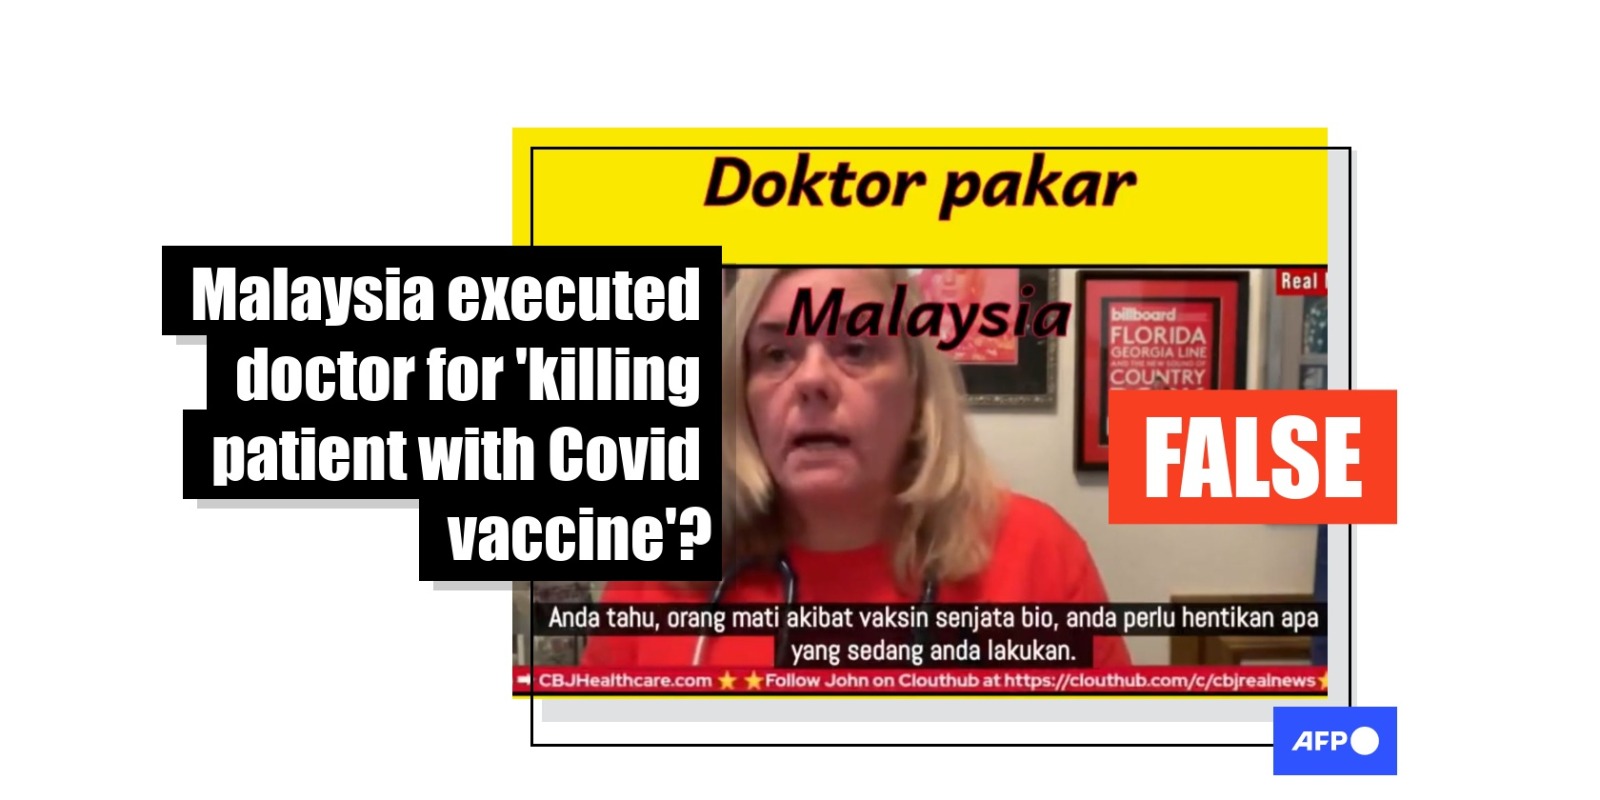 用疫苗杀死病人而被判处死刑？